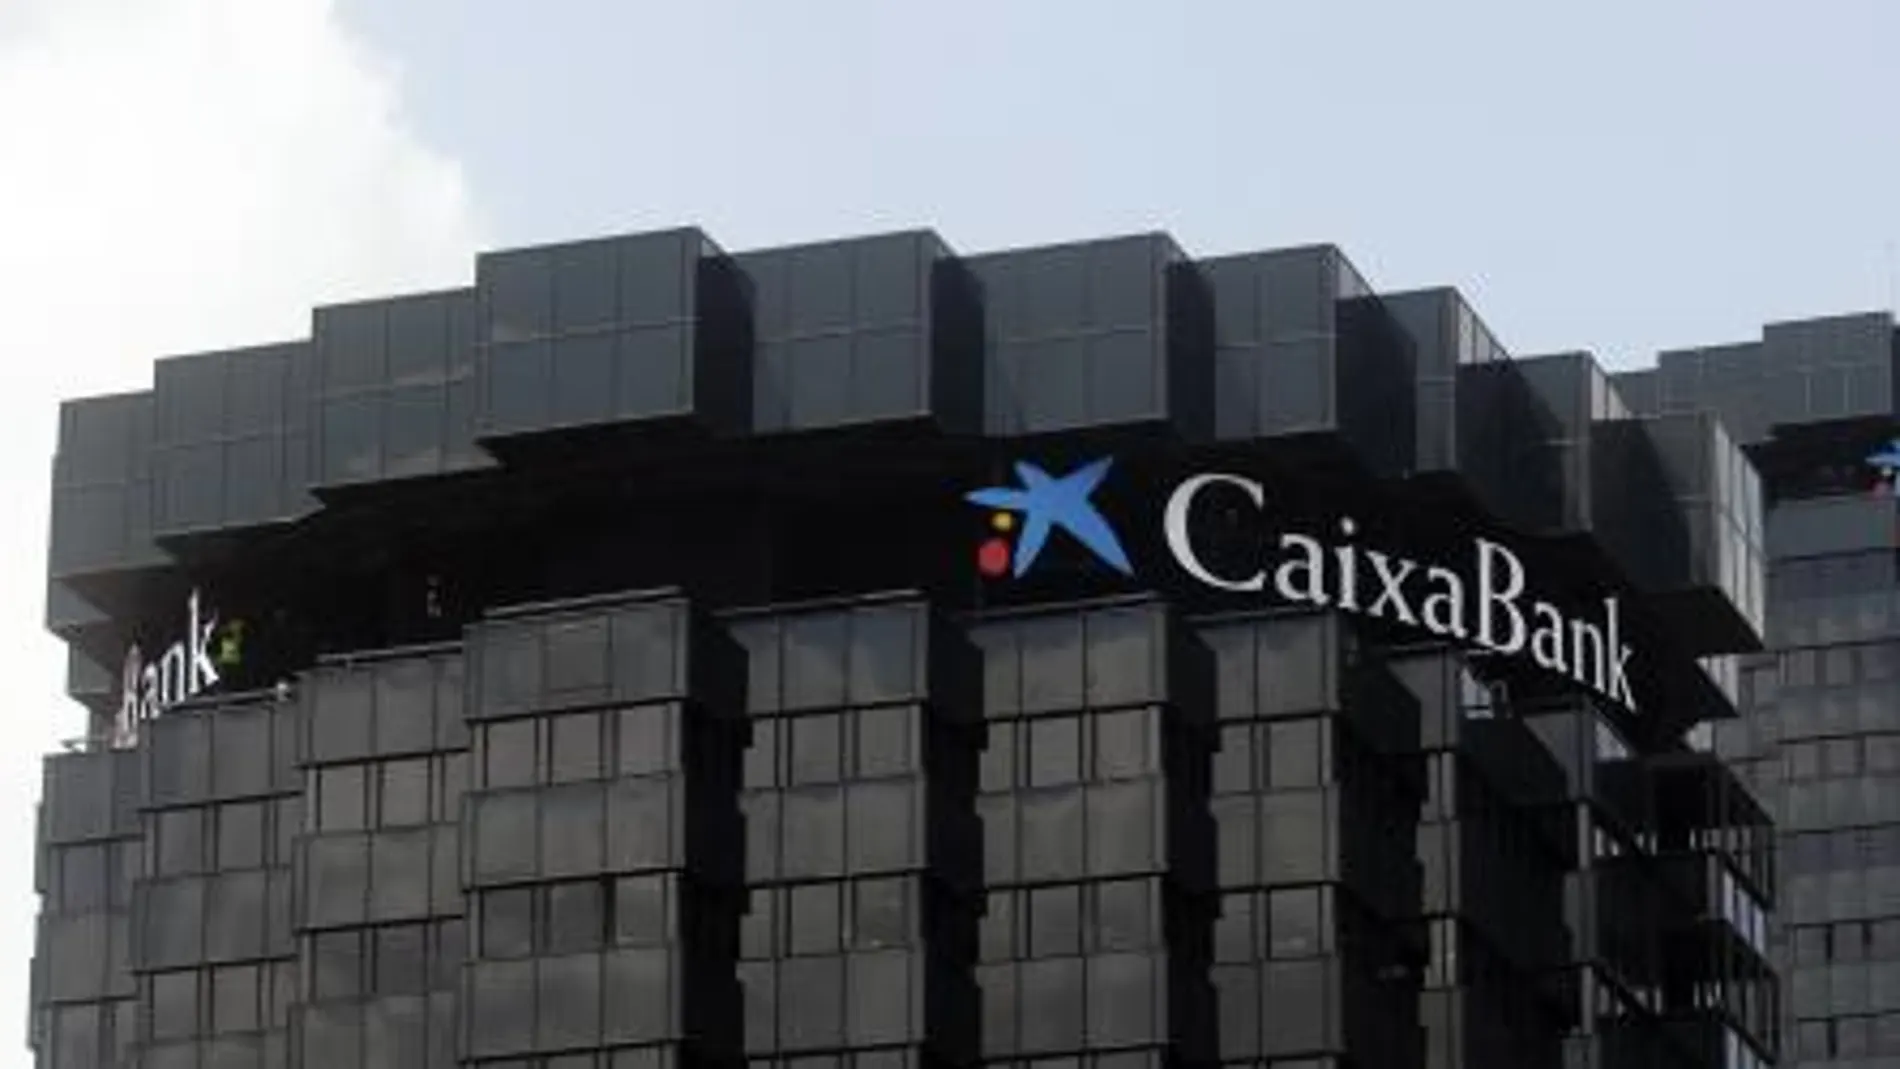 Caixabank compra el negocio de Barclays en España por 800 millones de euros